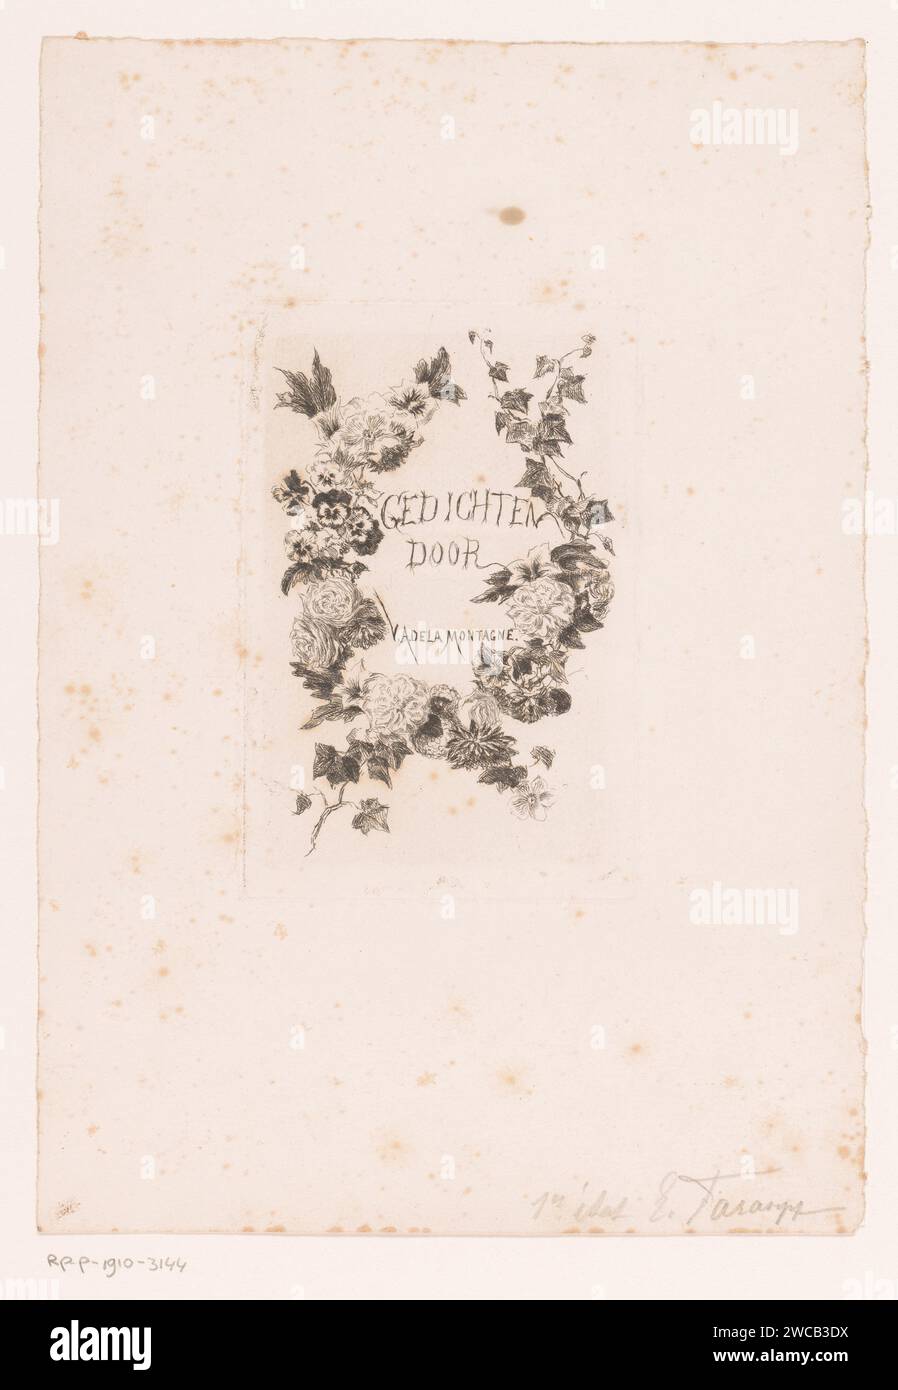 File di fiori, Edgard Farasyn, 1868 - 1910 stampa di carta con fiori incisi Foto Stock